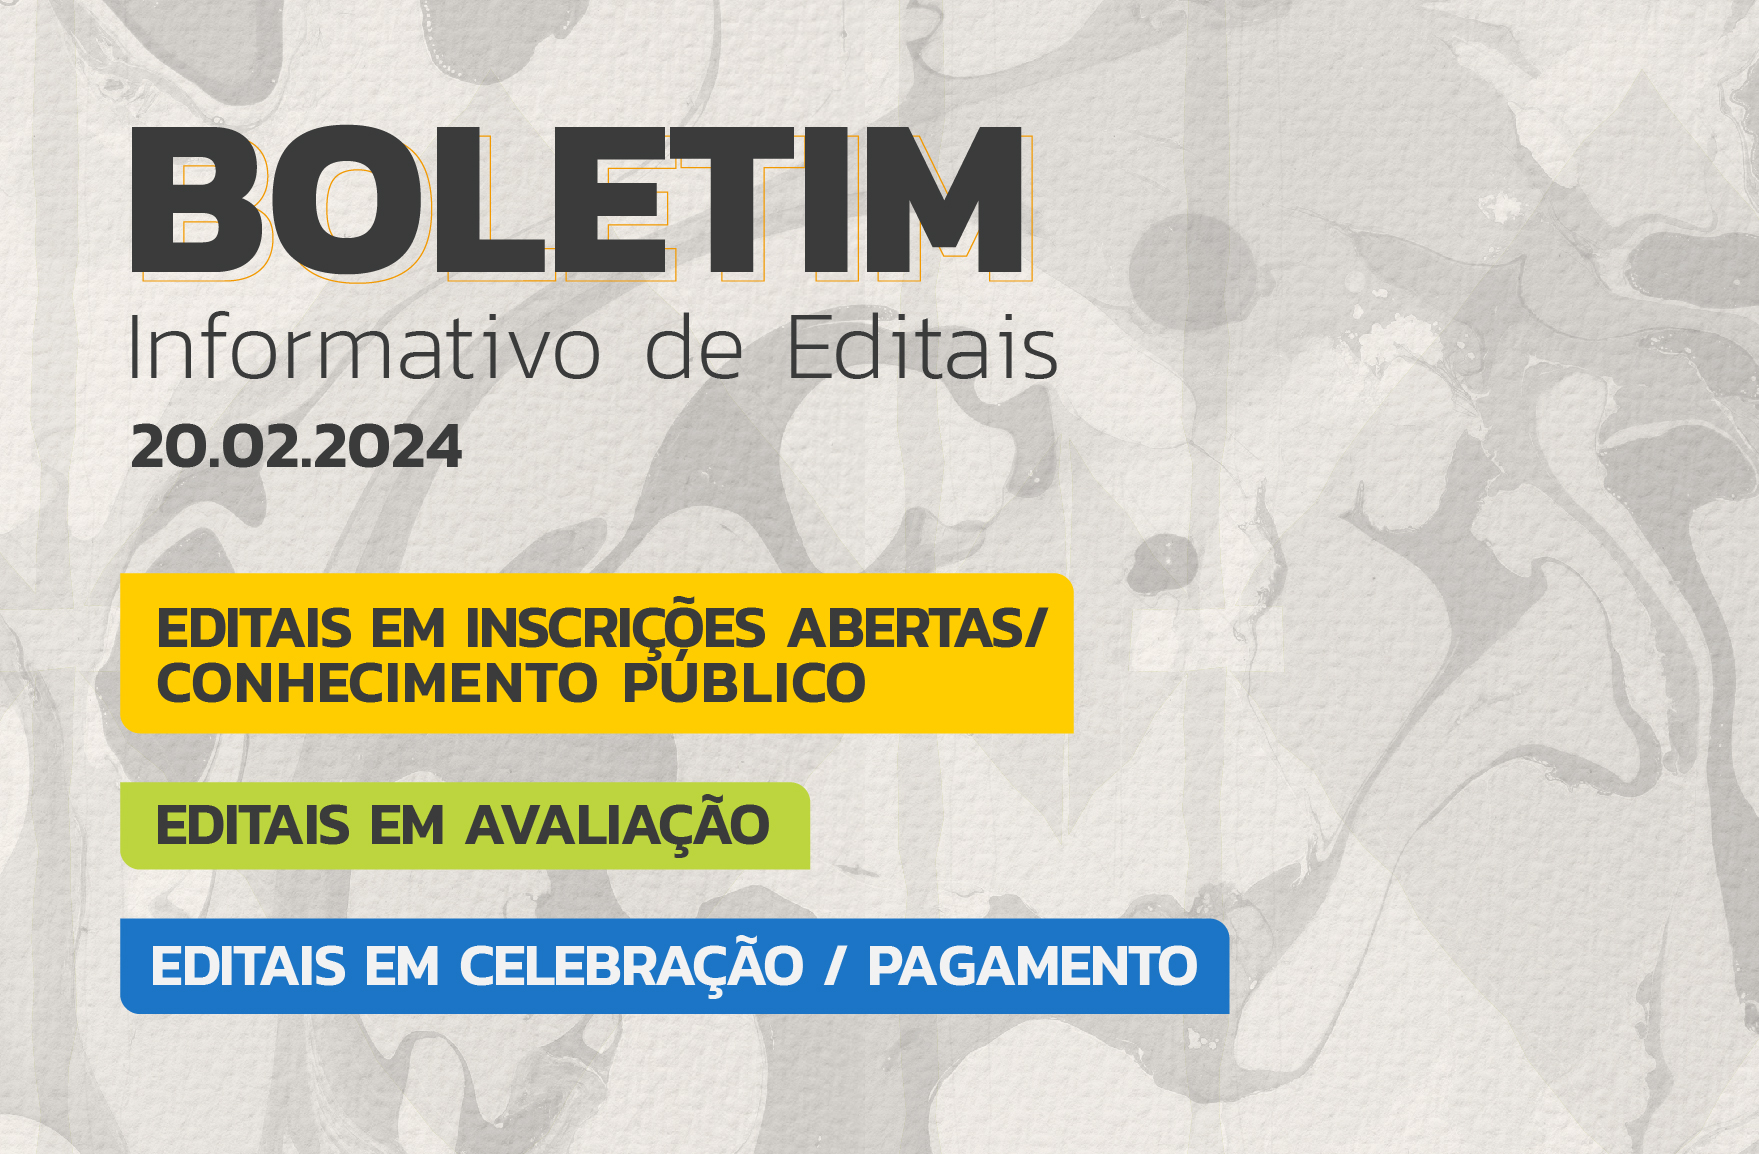 10 chamadas públicas encontram-se em pagamento, outras 16 estão em avaliação; confira o boletim semanal dos editais da Secult Ceará